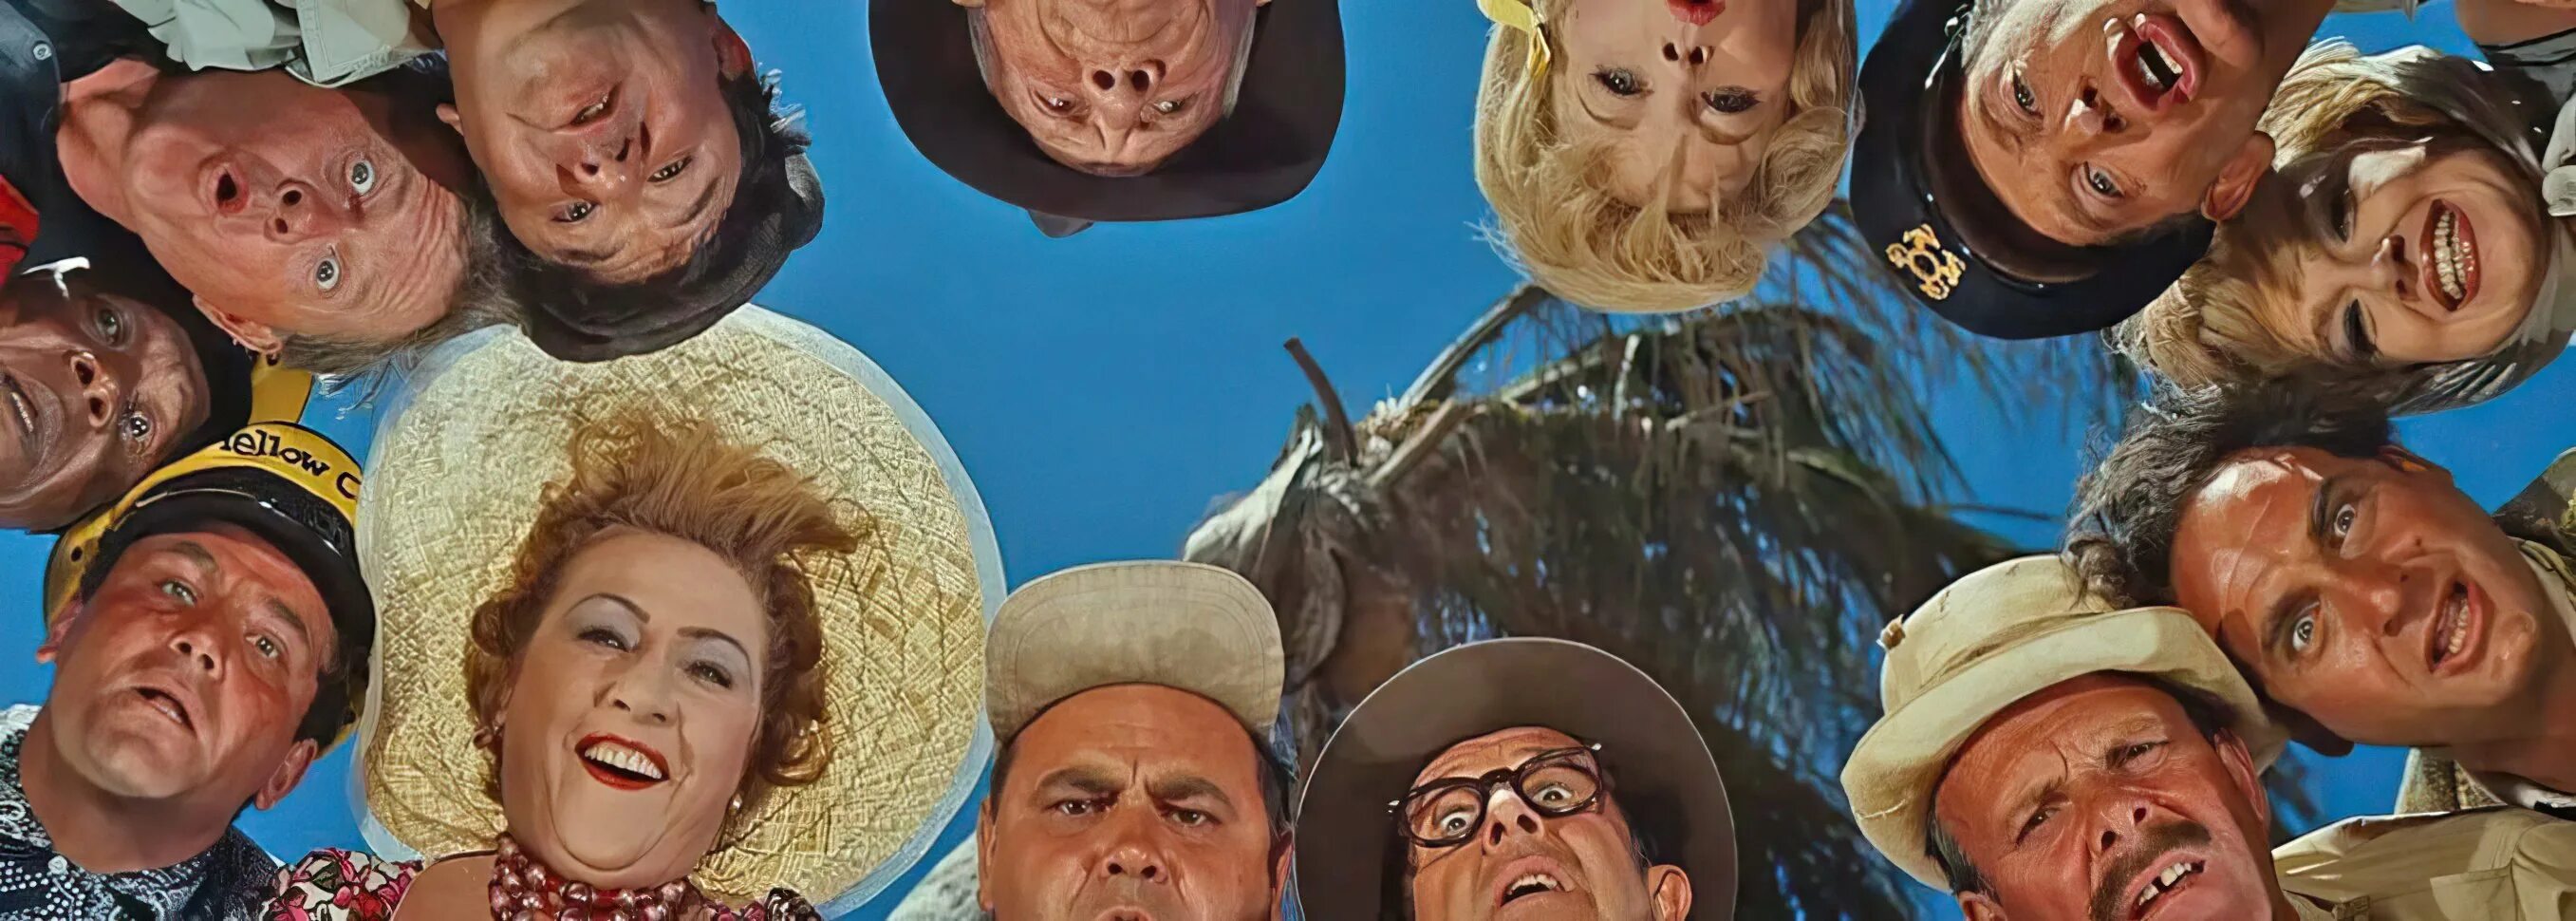 Они удивили мир. «Этот Безумный, Безумный, Безумный, Безумный мир», Стэнли Крамер, 1963. Этот Безумный Безумный Безумный Безумный мир 1963 танцы.